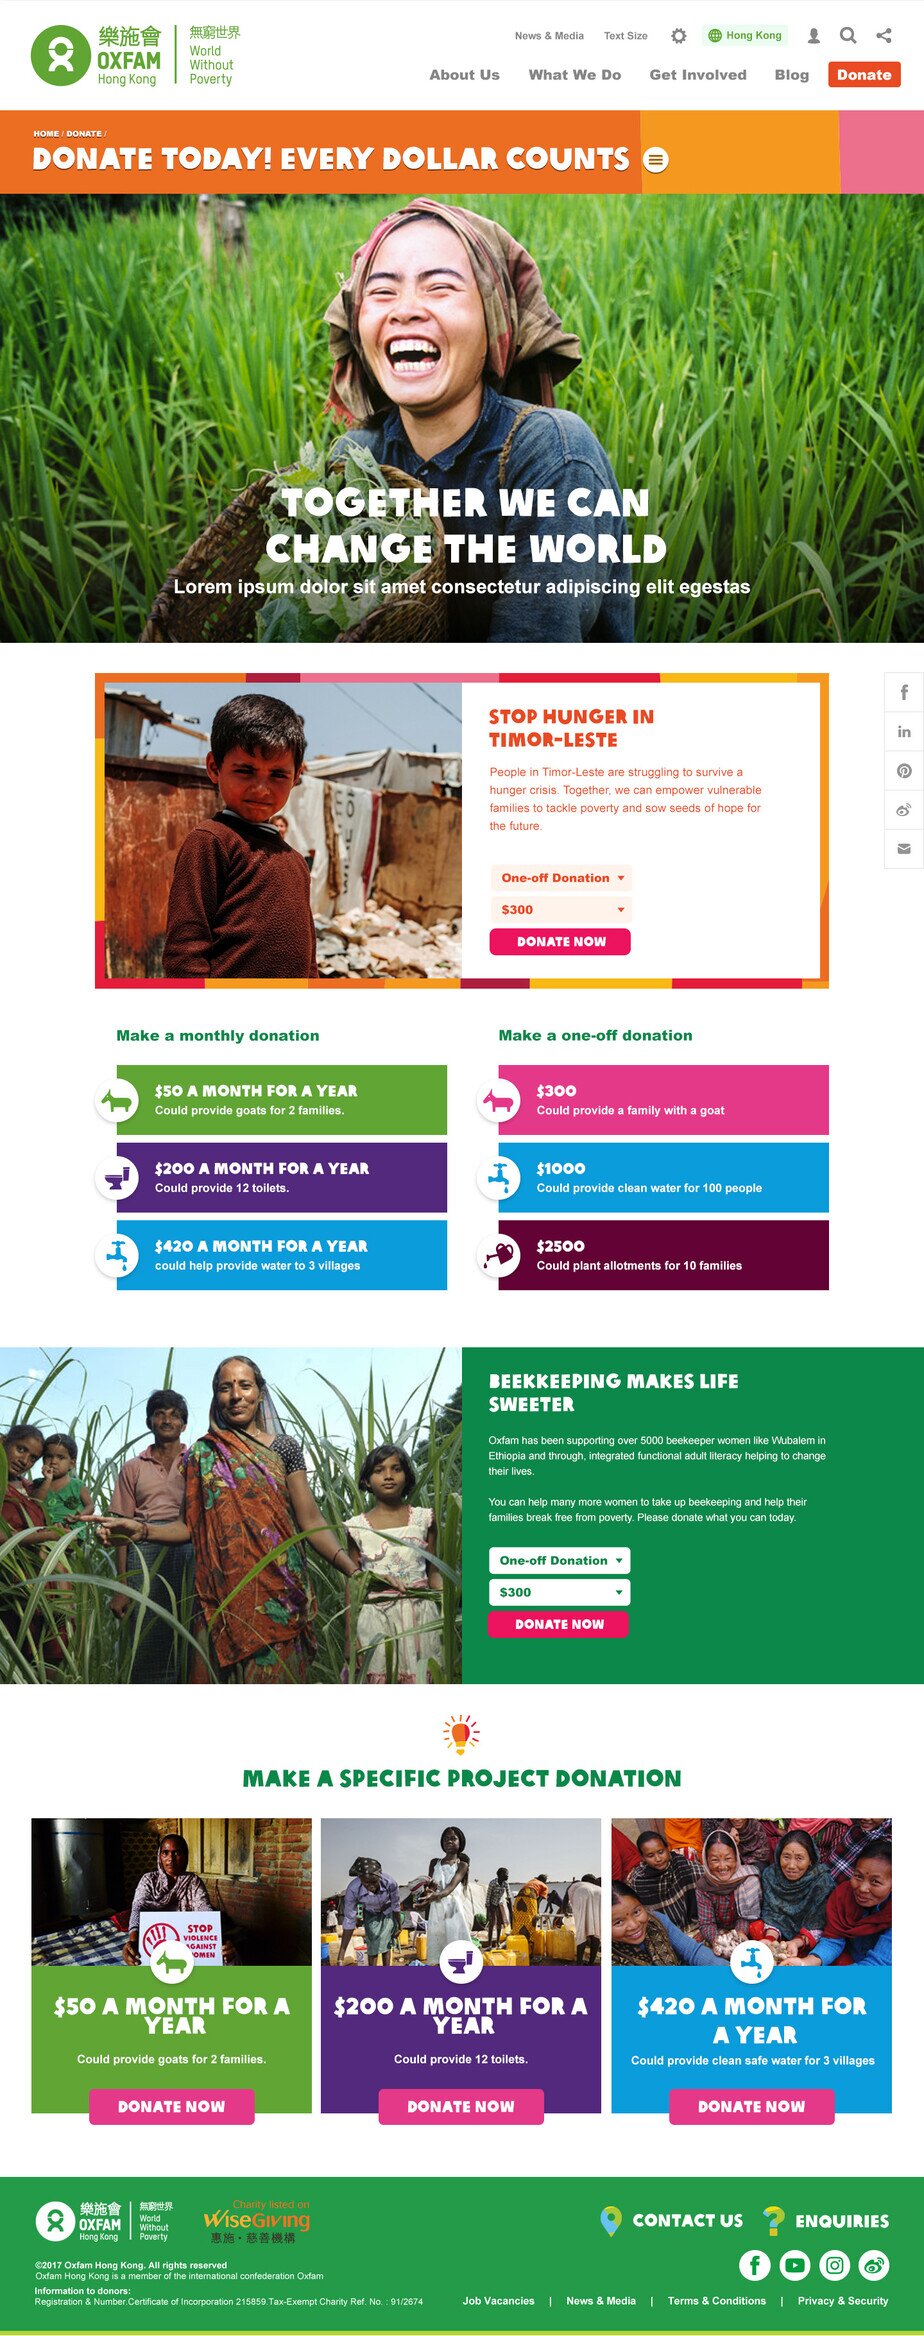 Oxfam Hong Kong website screenshot for desktop version 3 of 7